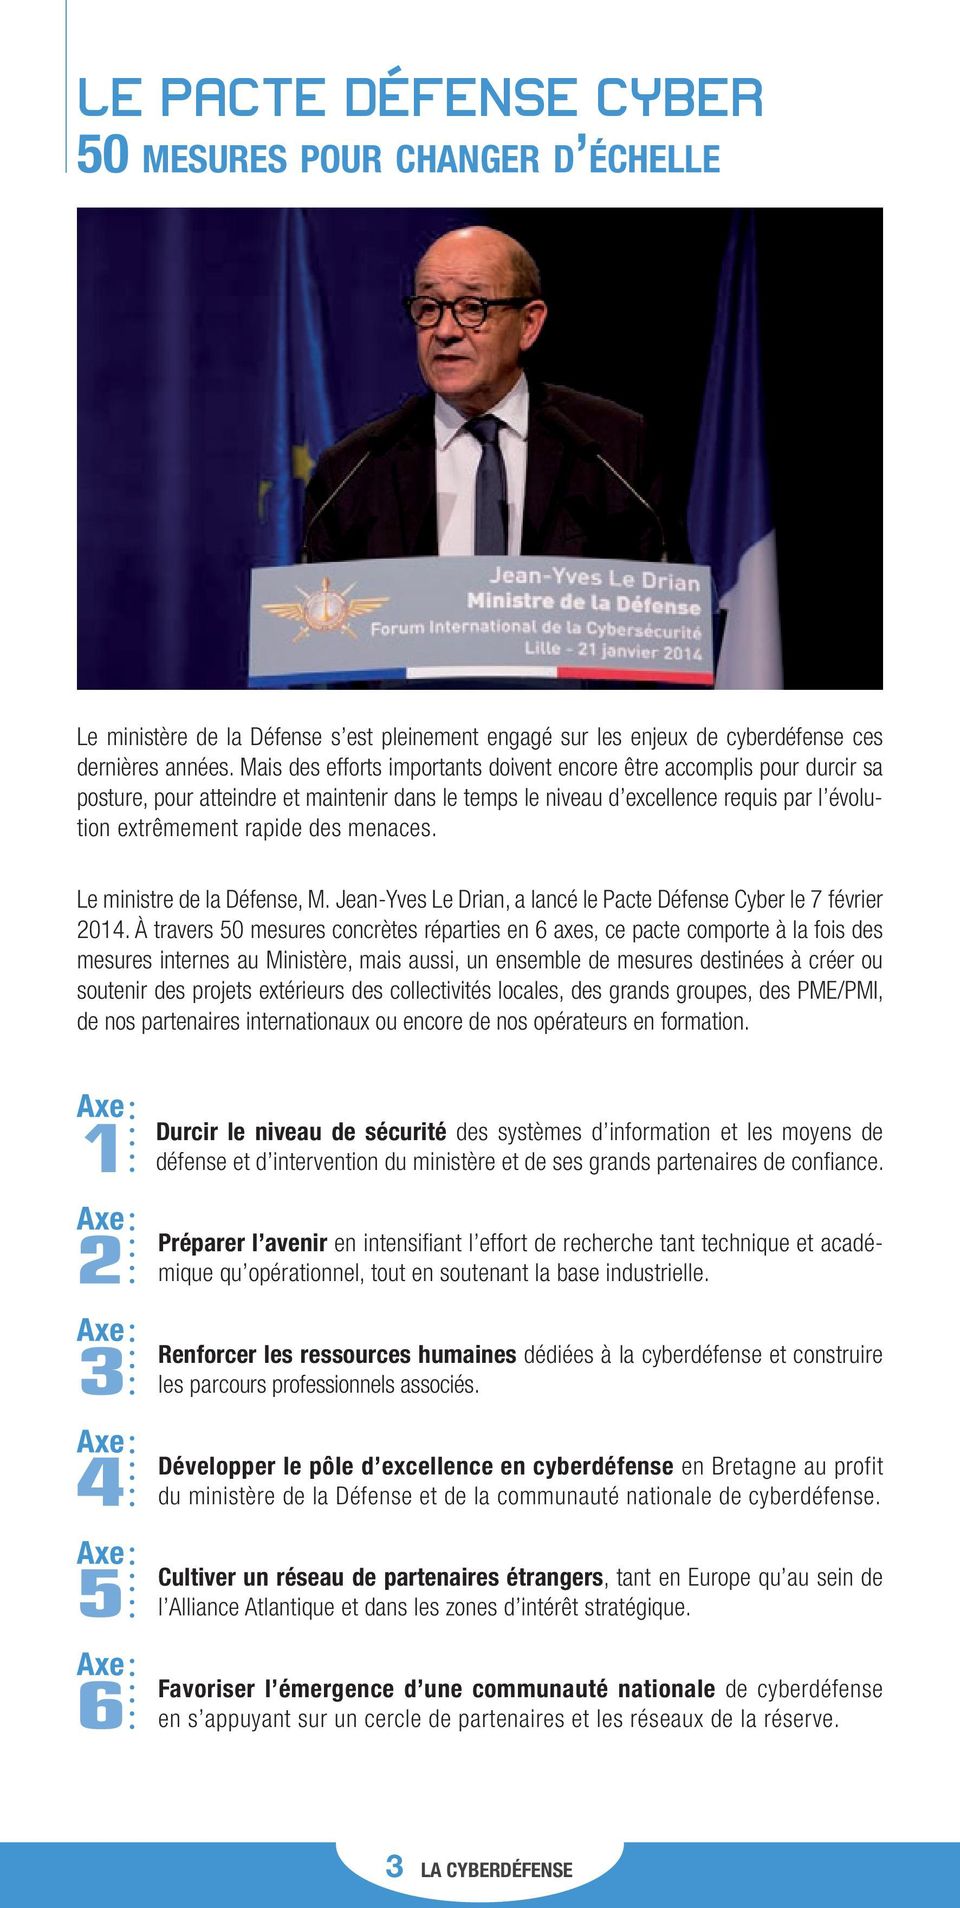 menaces. Le ministre de la Défense, M. Jean-Yves Le Drian, a lancé le Pacte Défense Cyber le 7 février 2014.